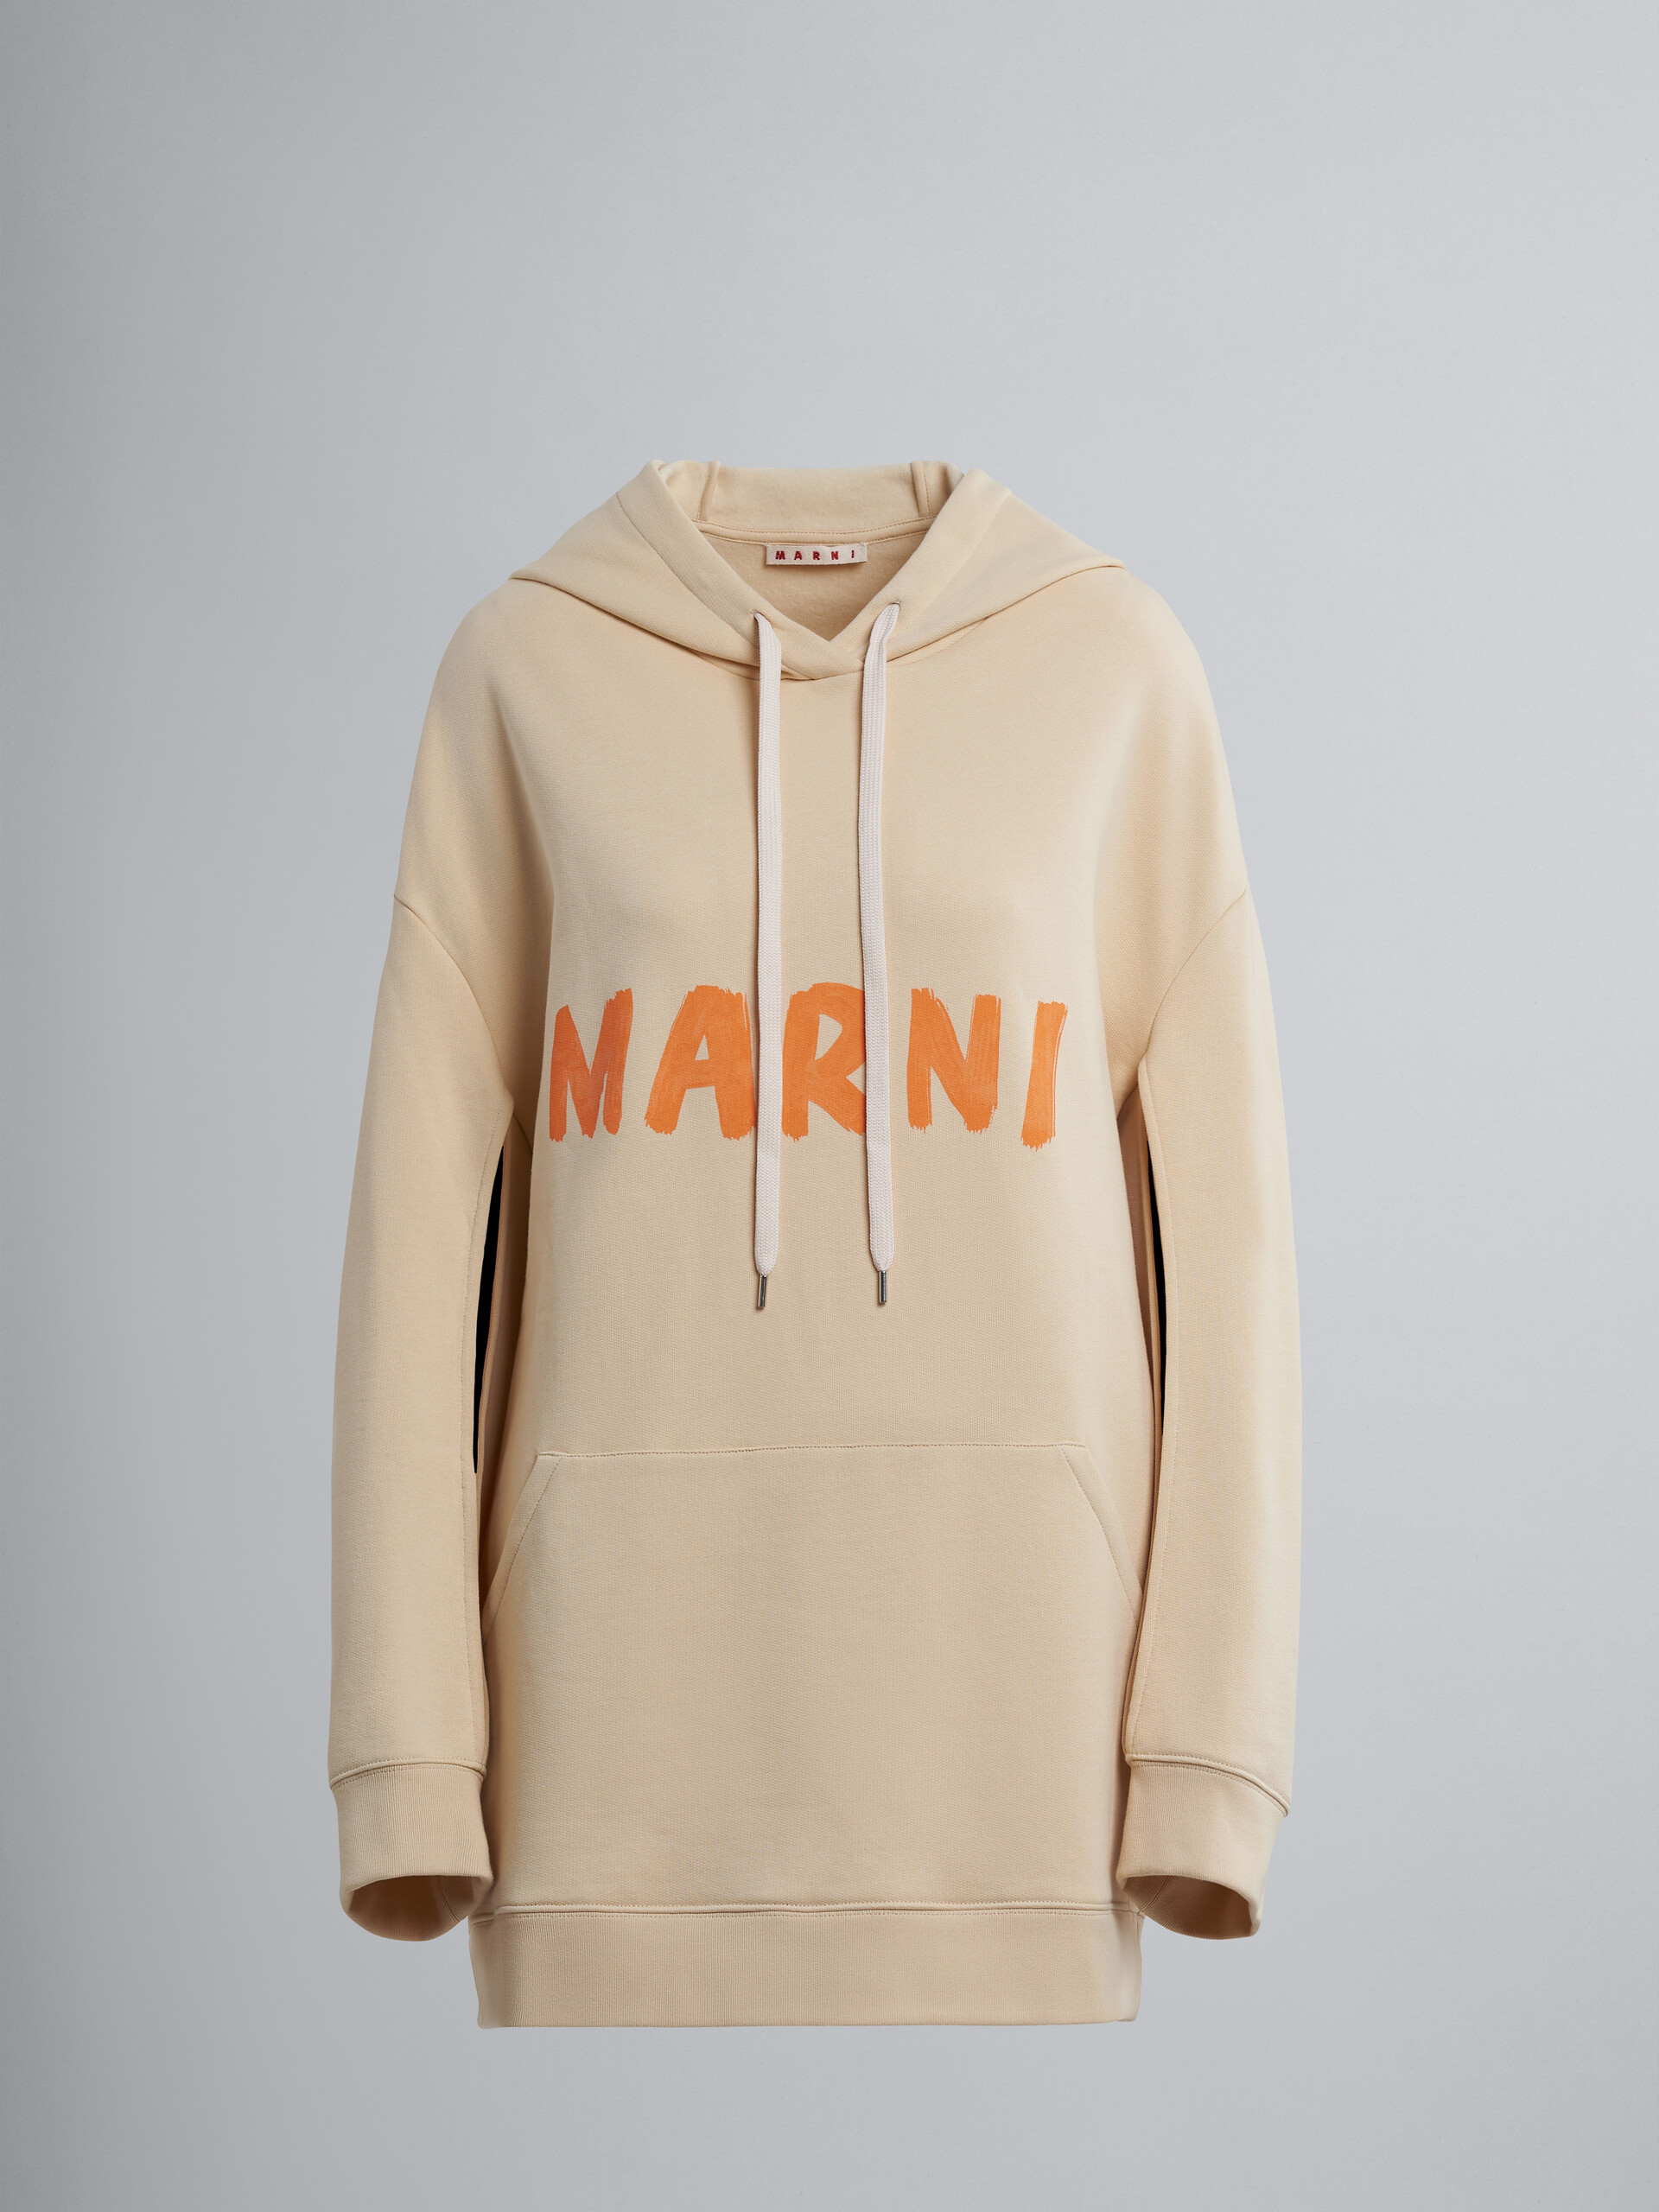 Marniのレタリング入りオーガニックコットン製スウェットシャツ - プルオーバー - Image 1